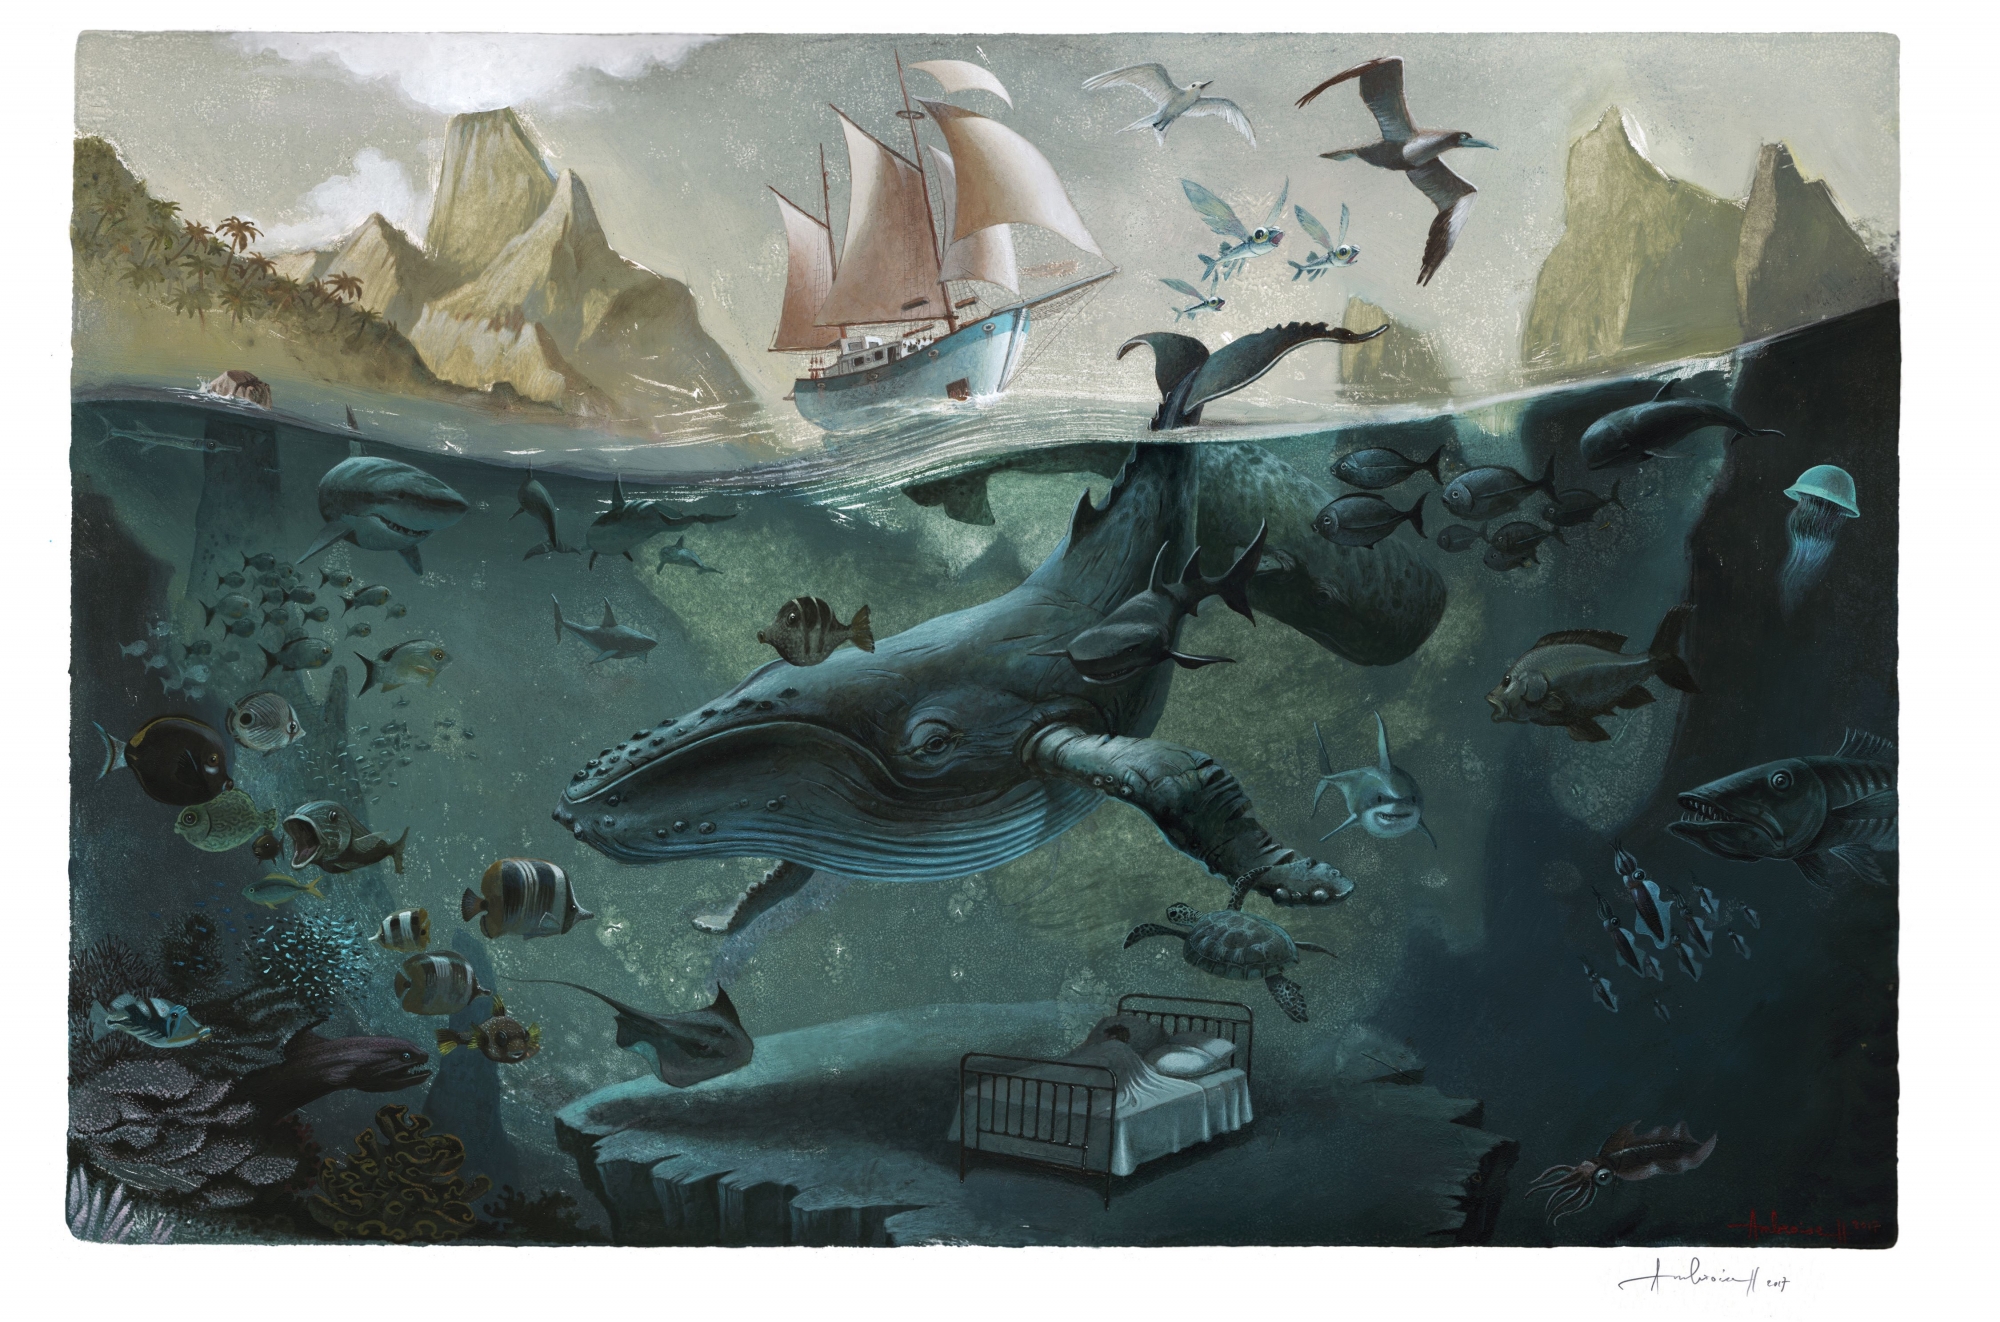 "Le rêve bleu" ou le souvenir des mémorables séances de snorkeling à la rencontre des baleines à bosse.